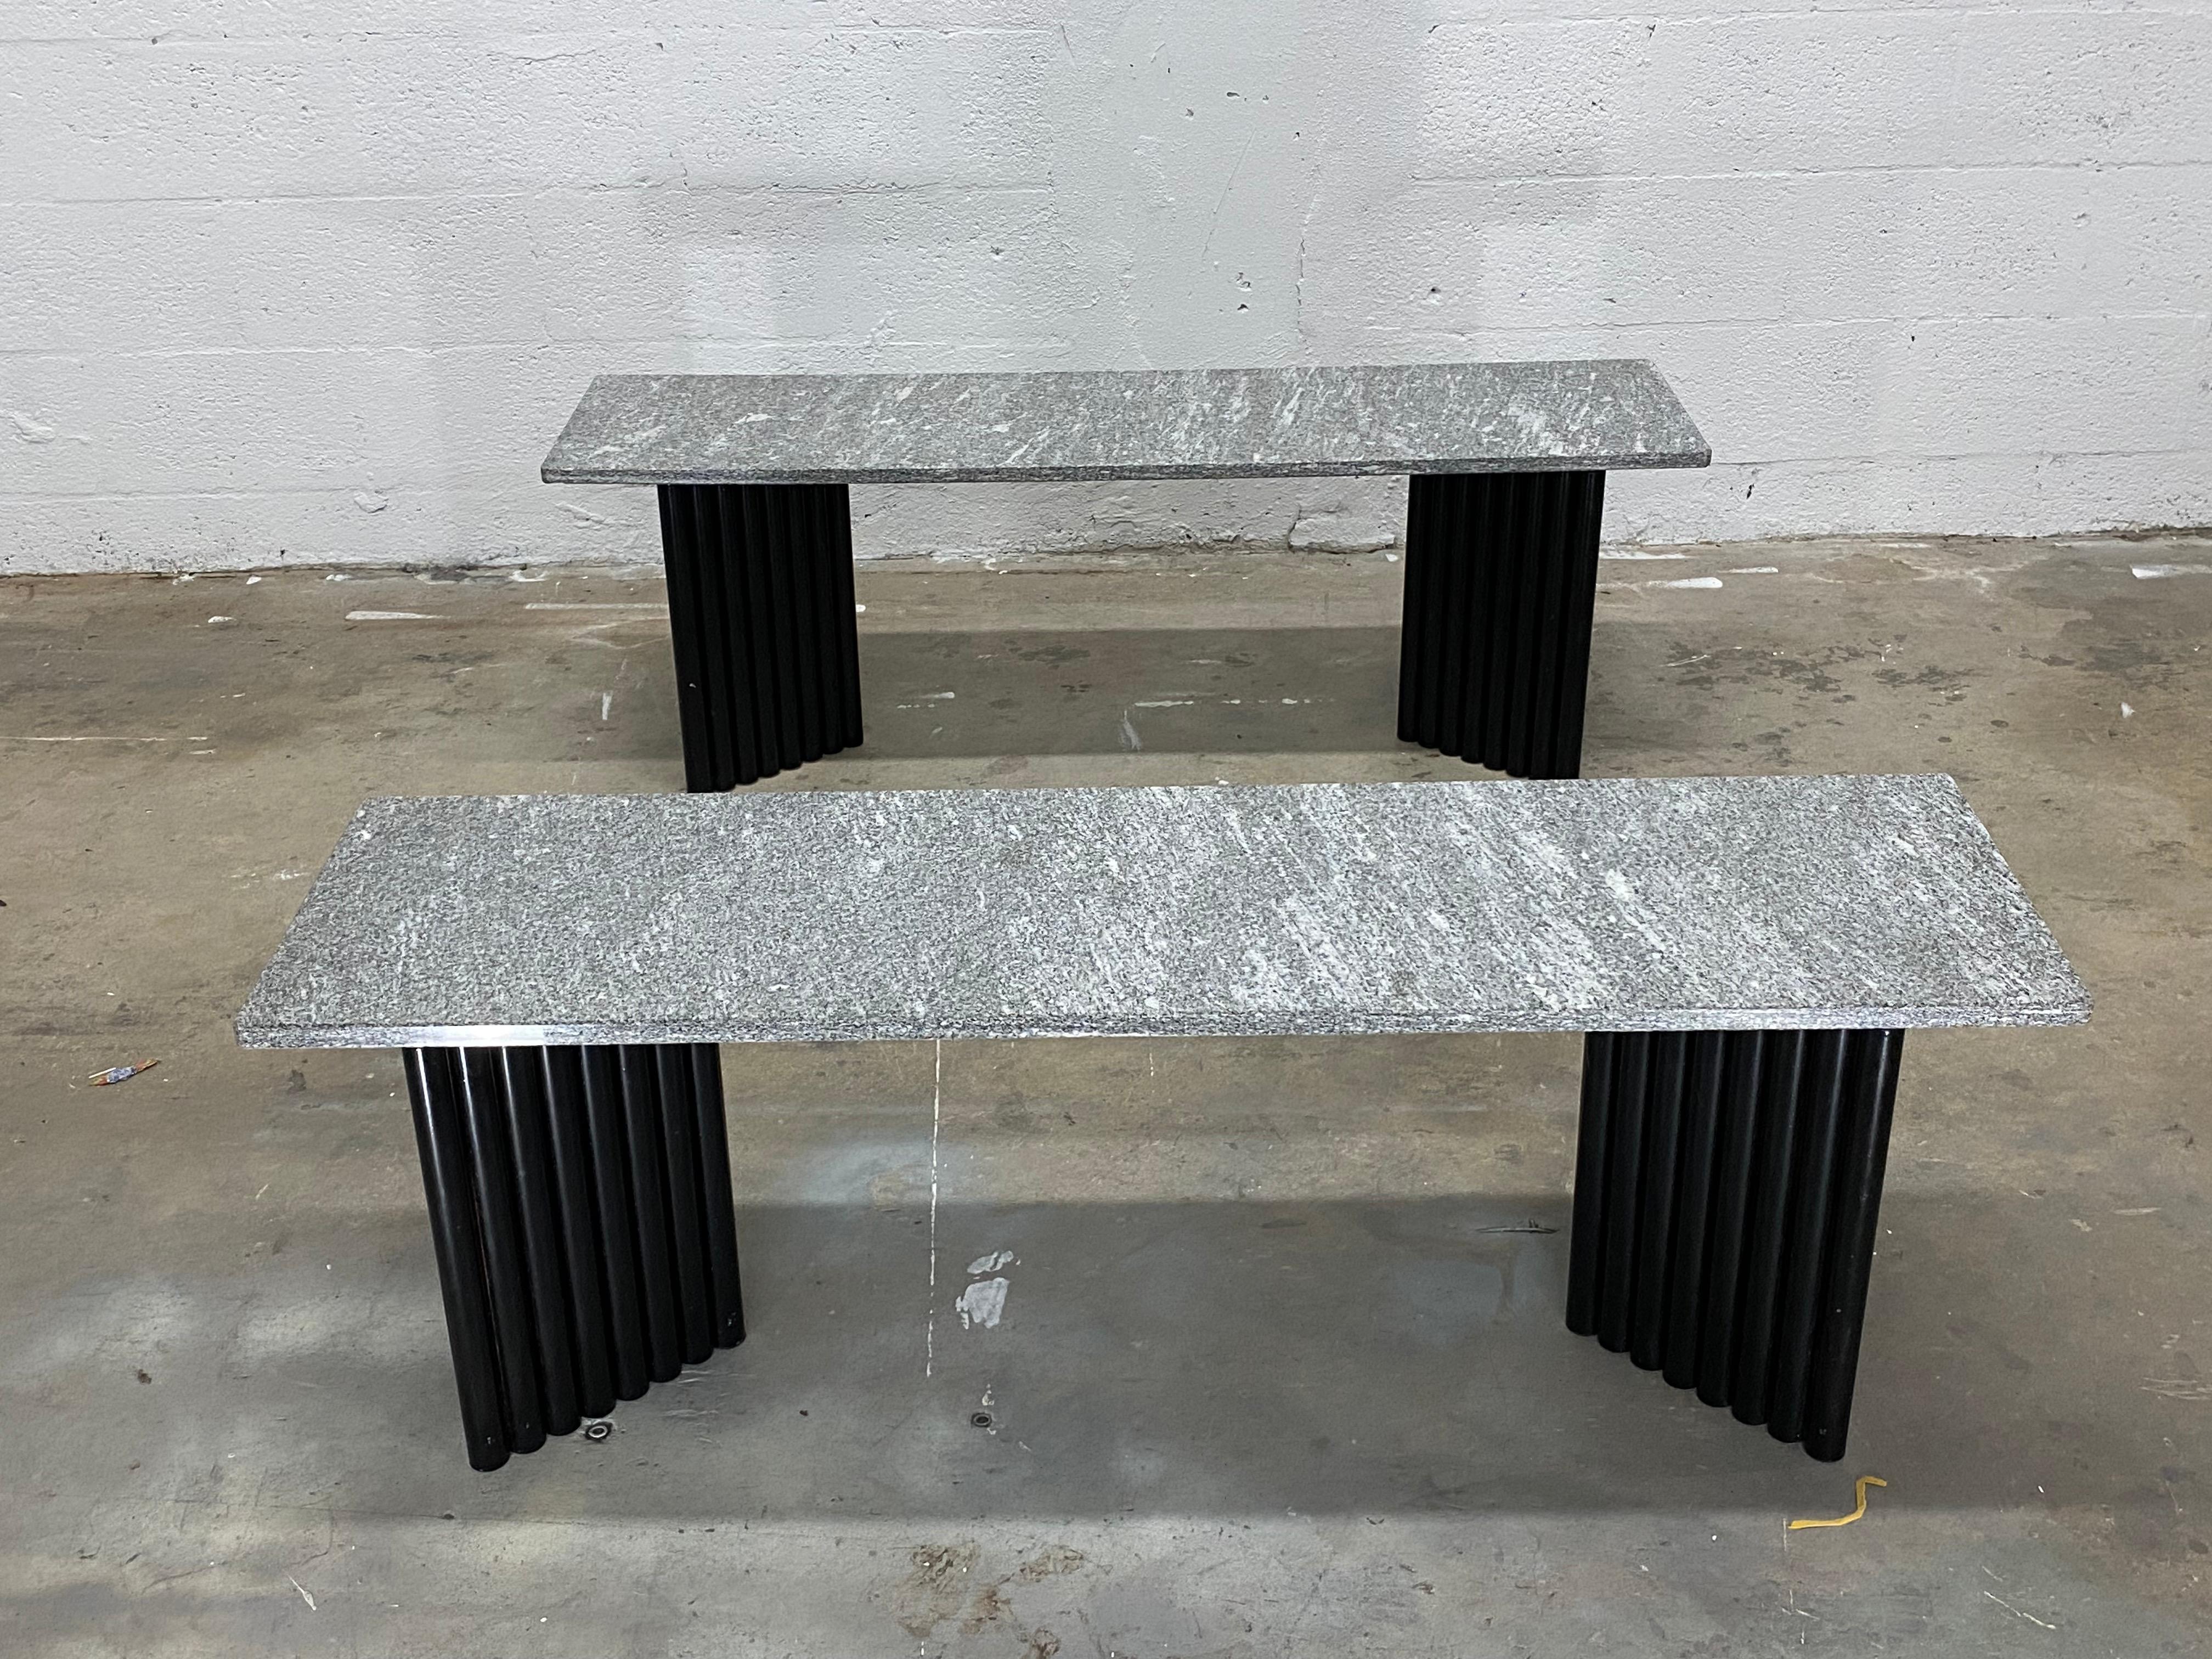 Paire de tables postmodernes à base d'acier tubulaire en forme de V, revêtues de poudre noire, avec des plateaux en marbre de granit massif, datant des années 1980. Elle peut être disposée en une multitude de variantes : tables d'appoint, tables